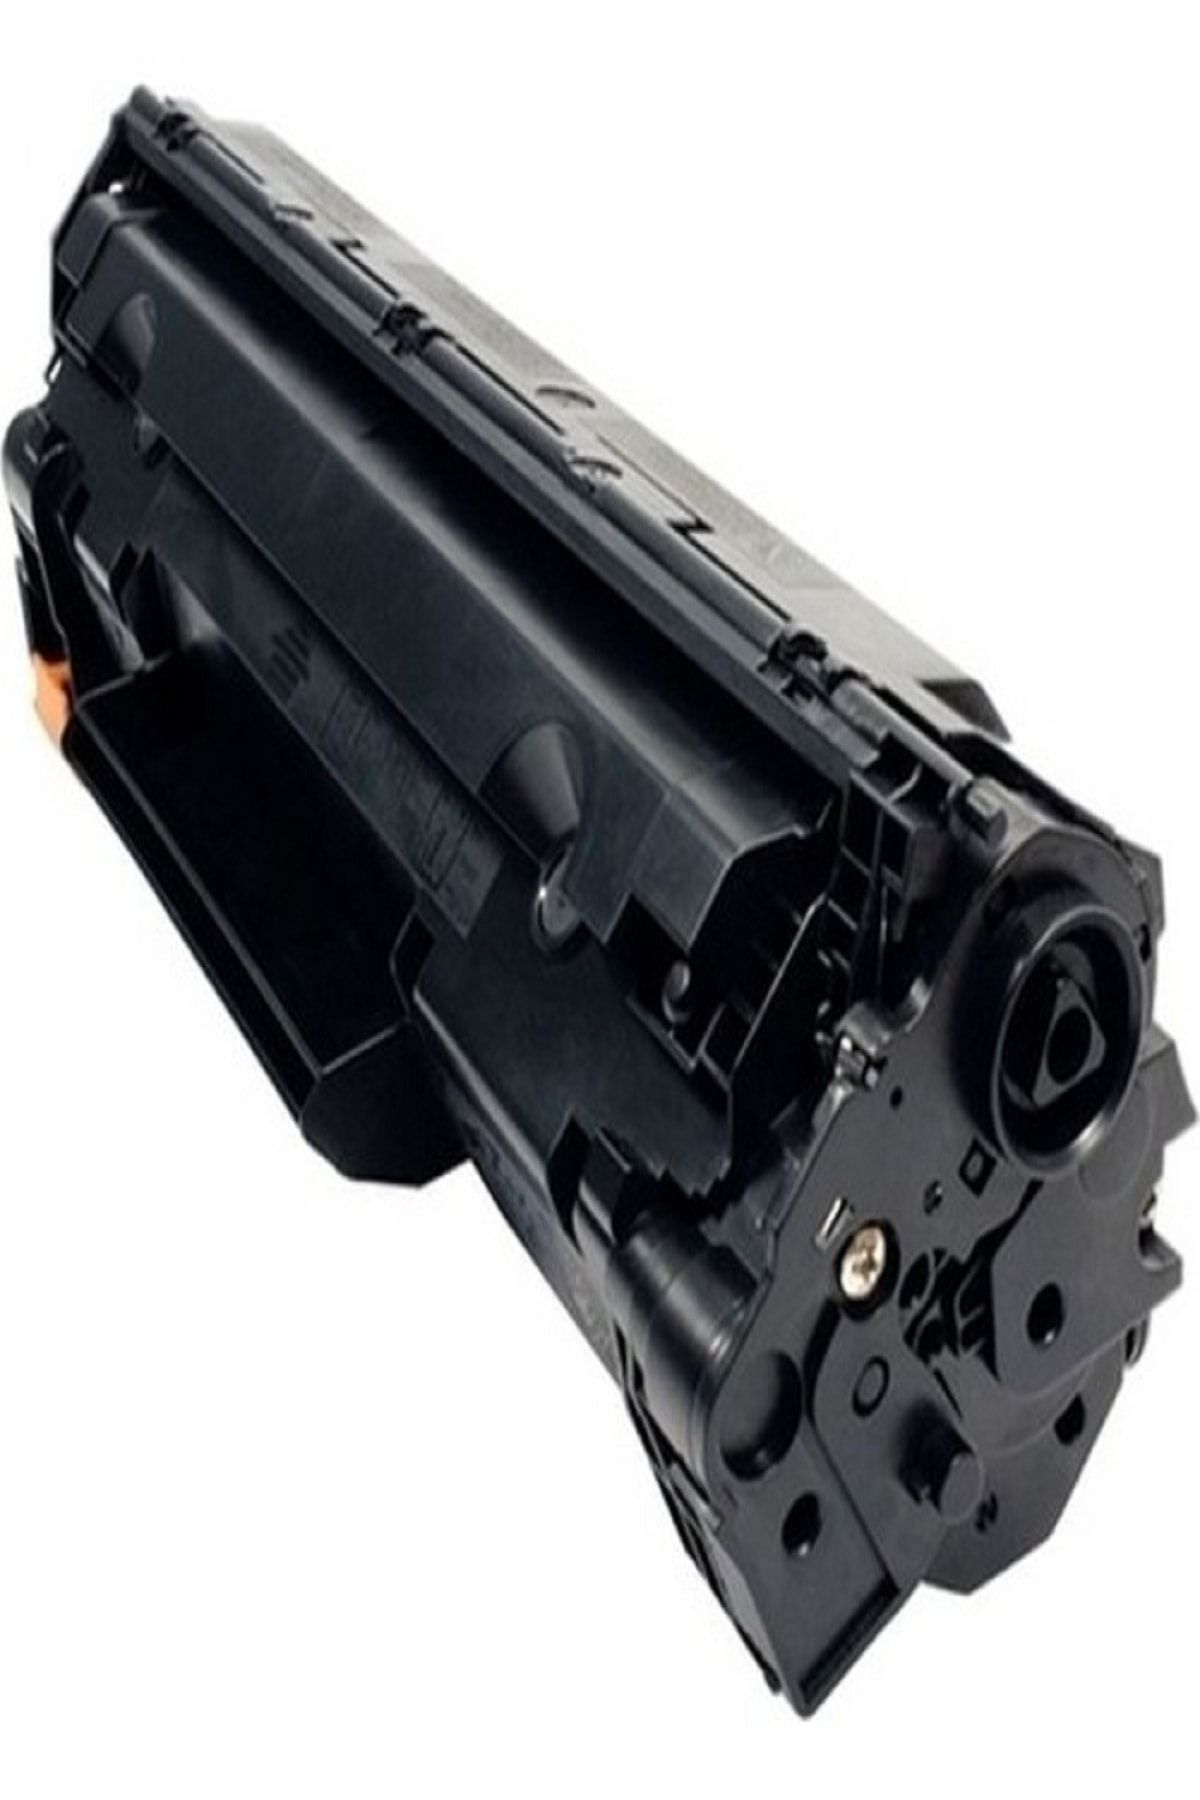 CNRKY Hp Laserjet M1130 Muadil Toner Hp 85a Ce285a